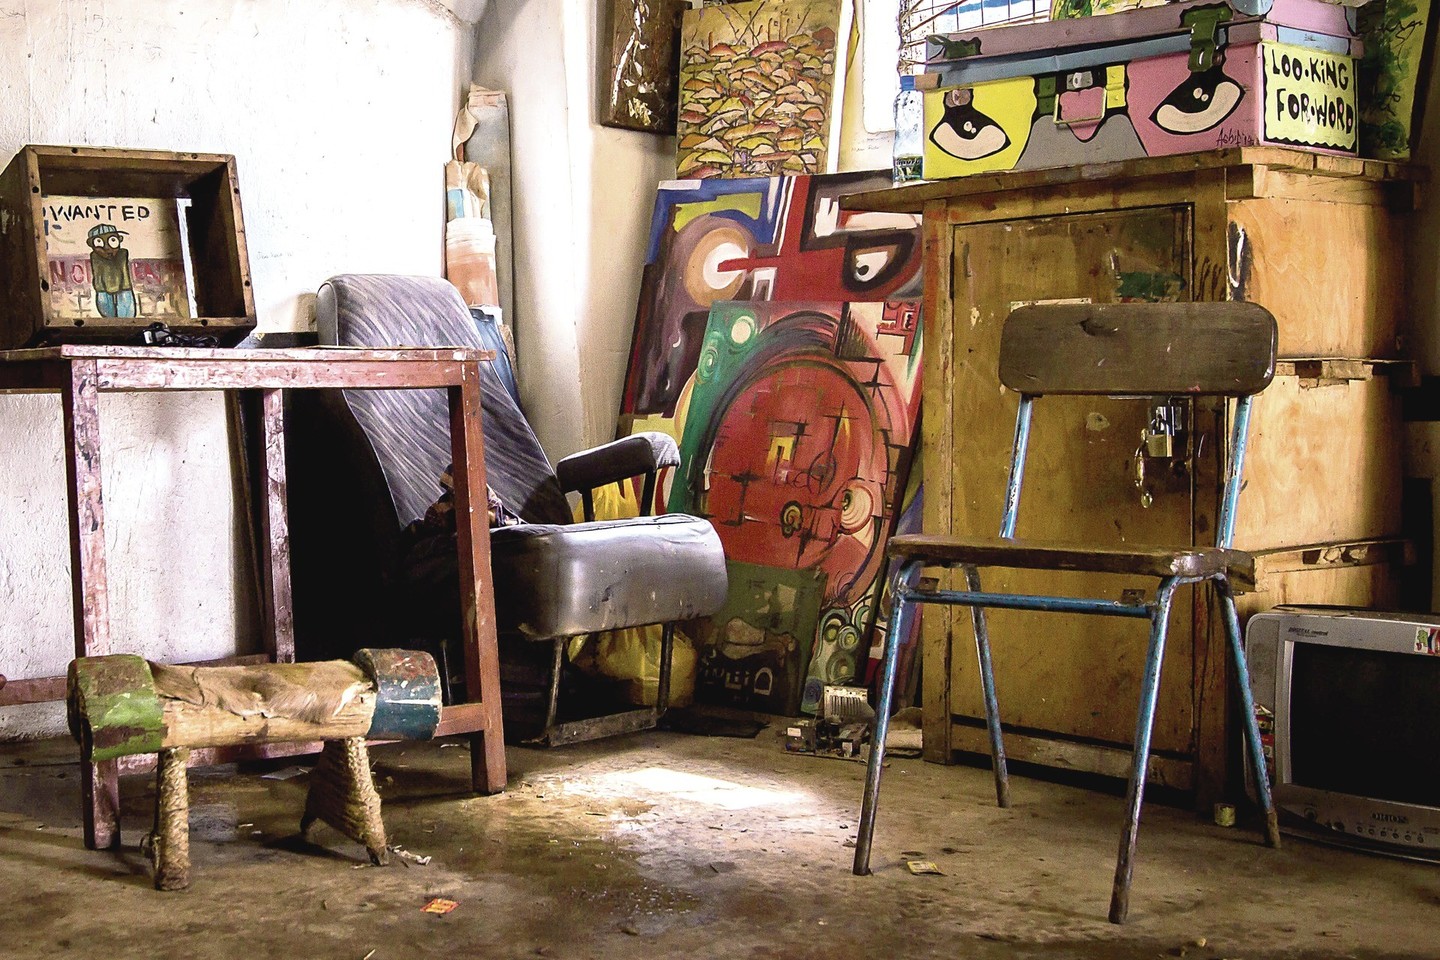 Didžiausiame Rytų Afrikos lūšnyne, vadinamame Kibera, įsikūrusi menininkų studija yra ir darbo, ir laisvalaikio leidimo vieta Sandrai bei jos draugams.<br>G.Stravinskaitės nuotr.